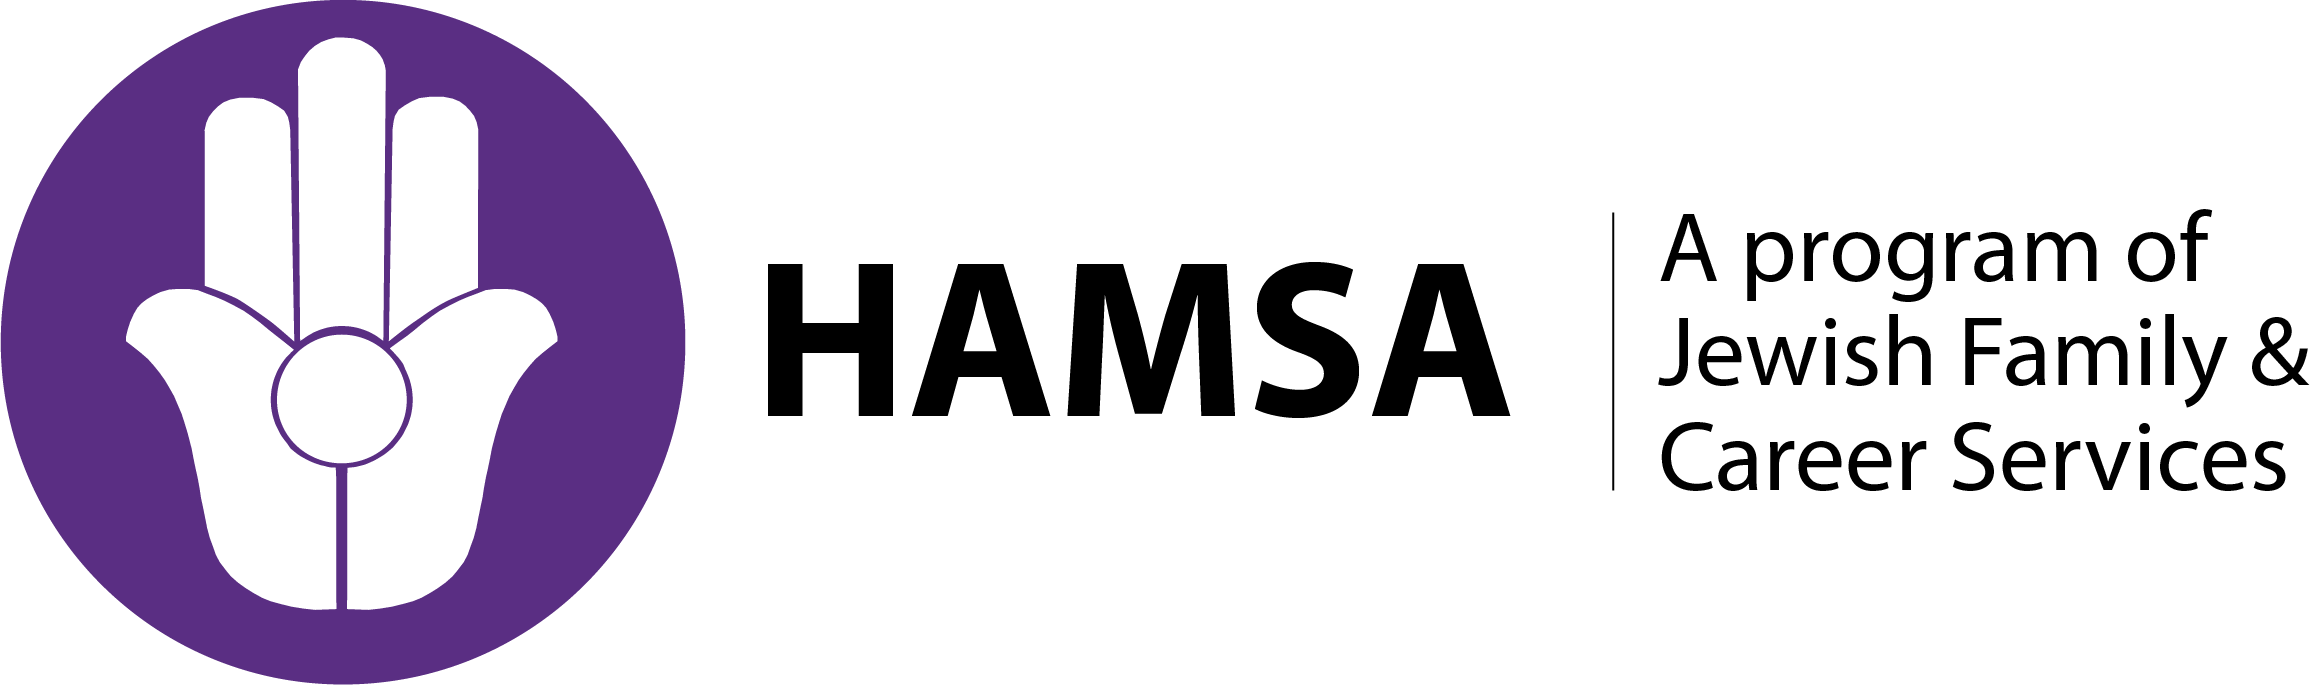 HAMSA - Helping Atlantans Manage Substance Abuse